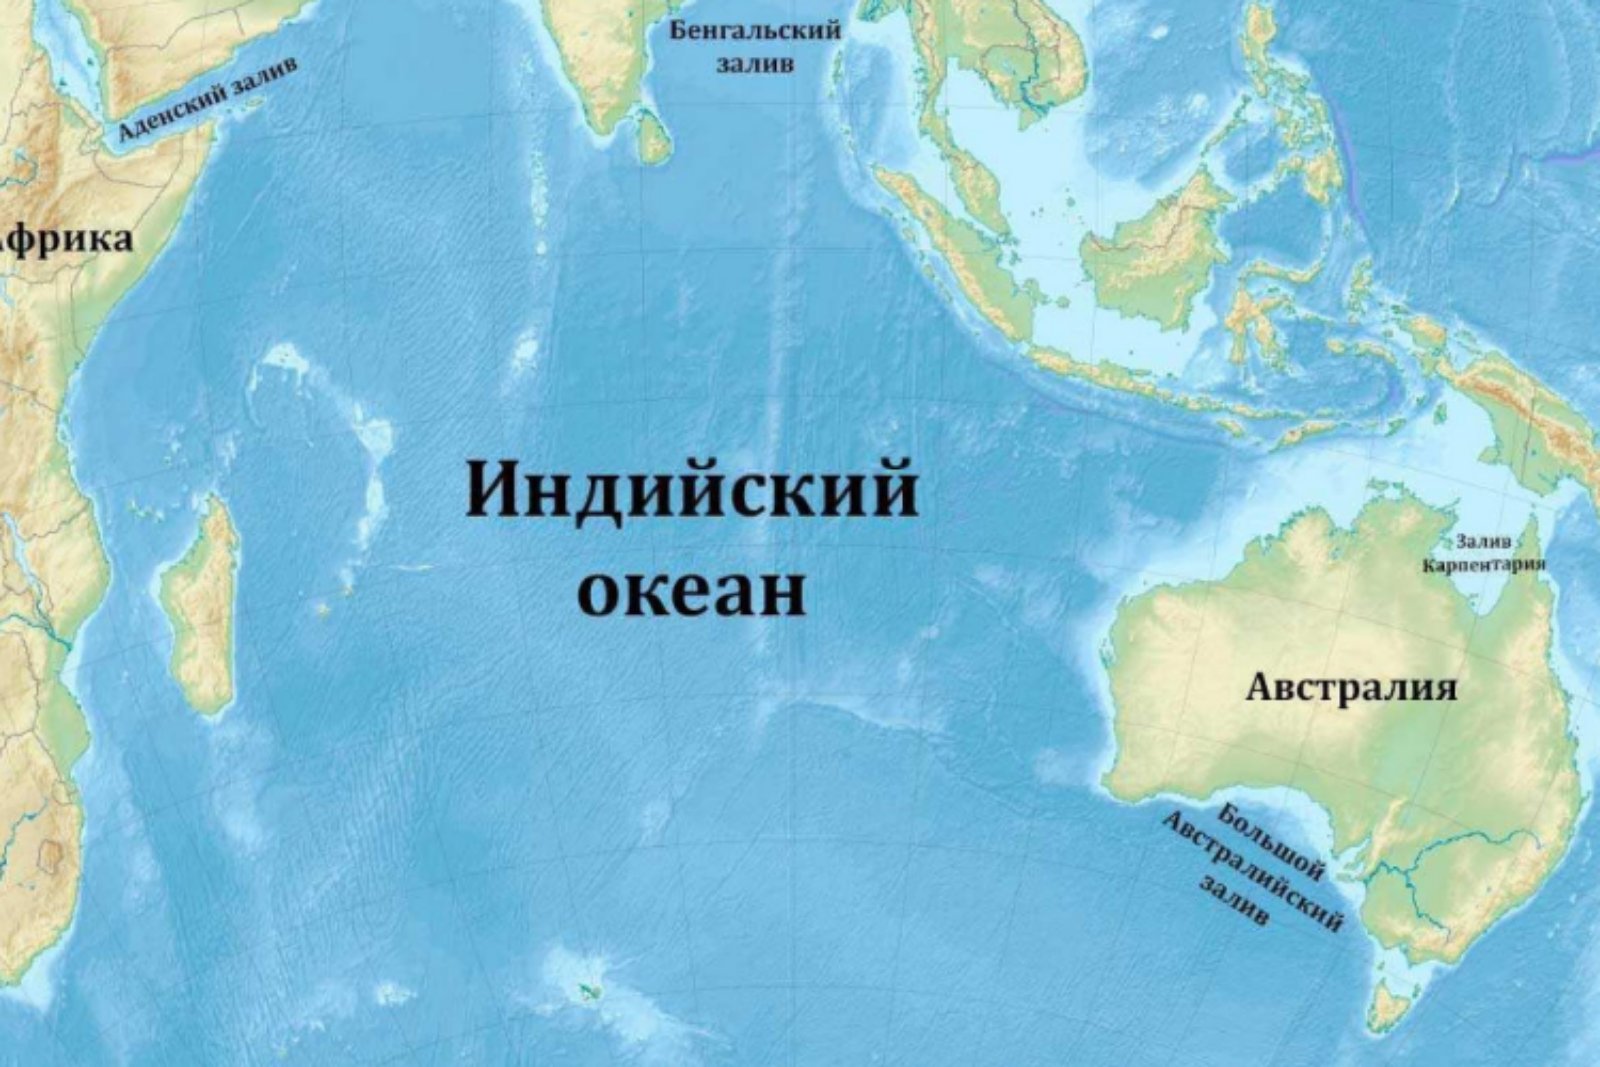 Тихий океан 6 букв. Оманский залив на карте индийского океана. Заливы и проливы индийского океана на карте. Карта индийского океана с морями заливами и проливами. Индийский океан на карте.